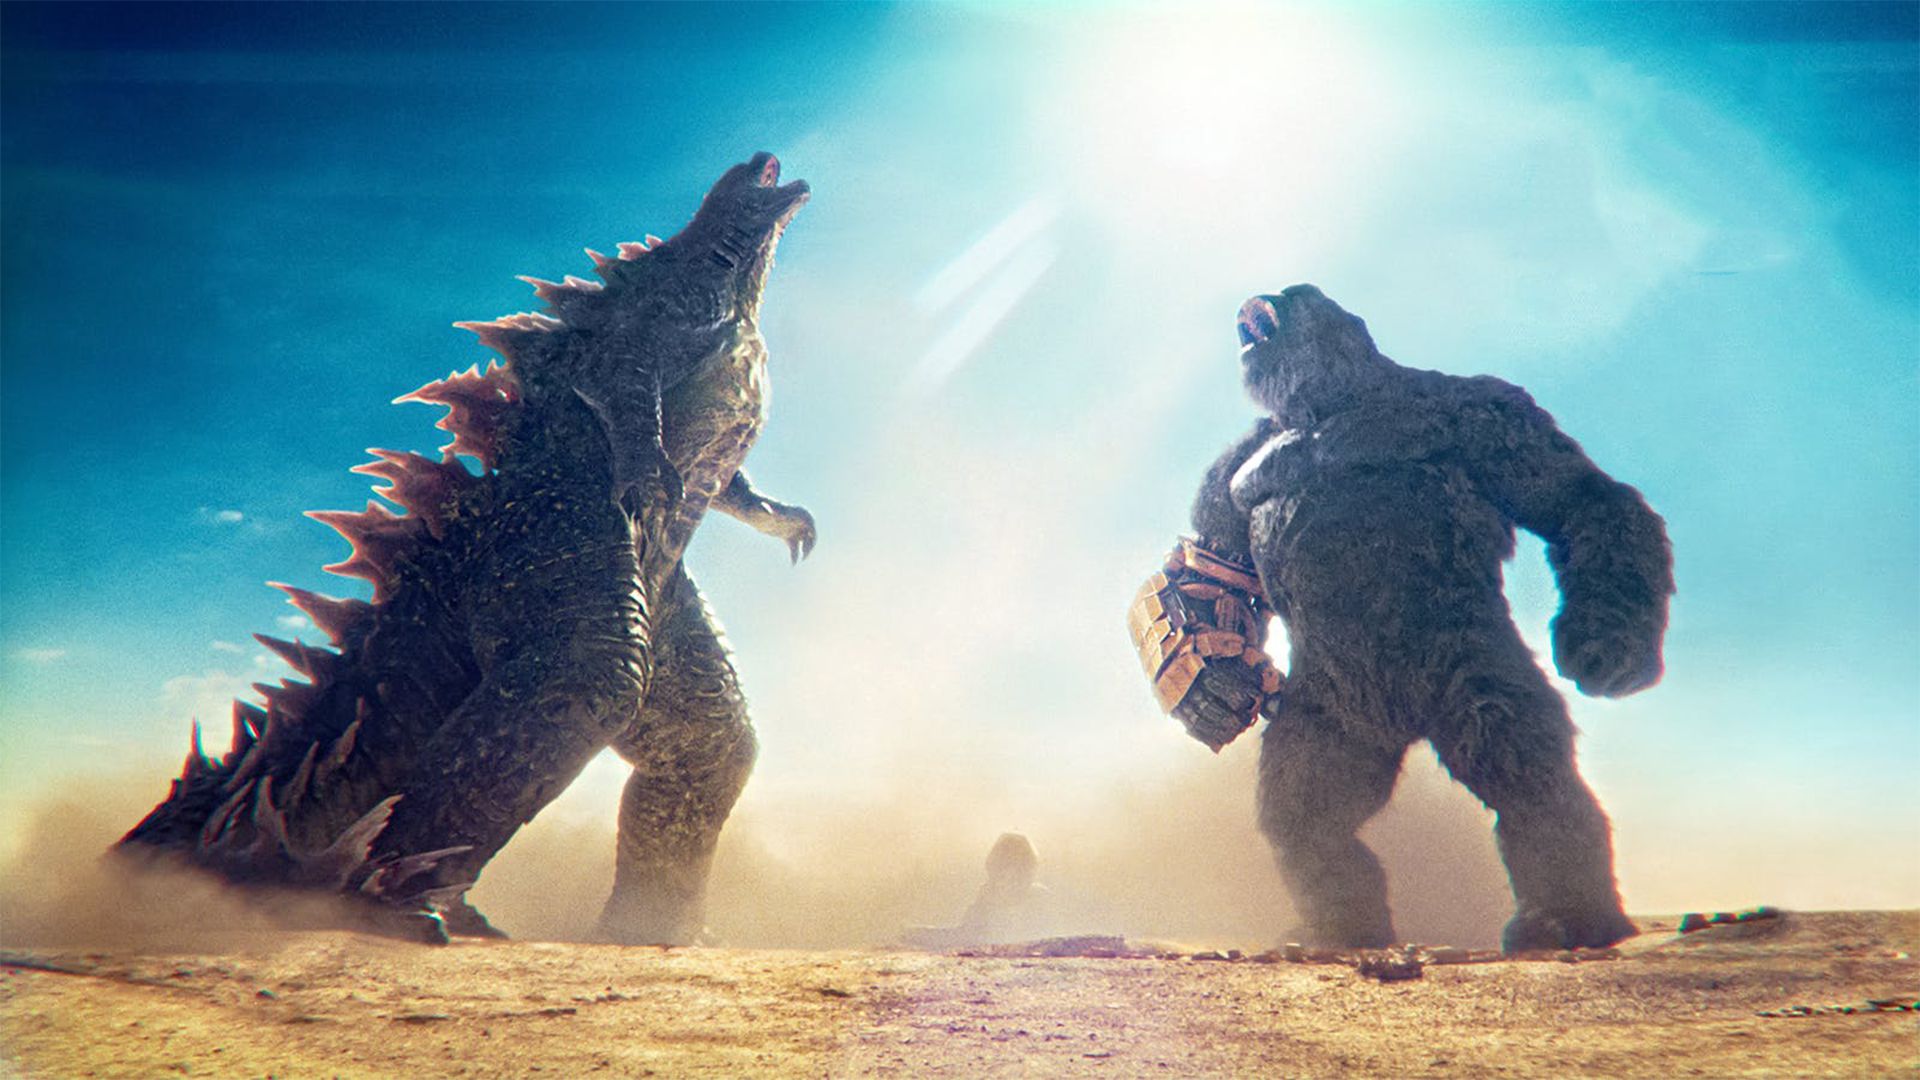 کارگردان Godzilla x Kong در دنباله این فیلم هیولایی باز نخواهد گشت